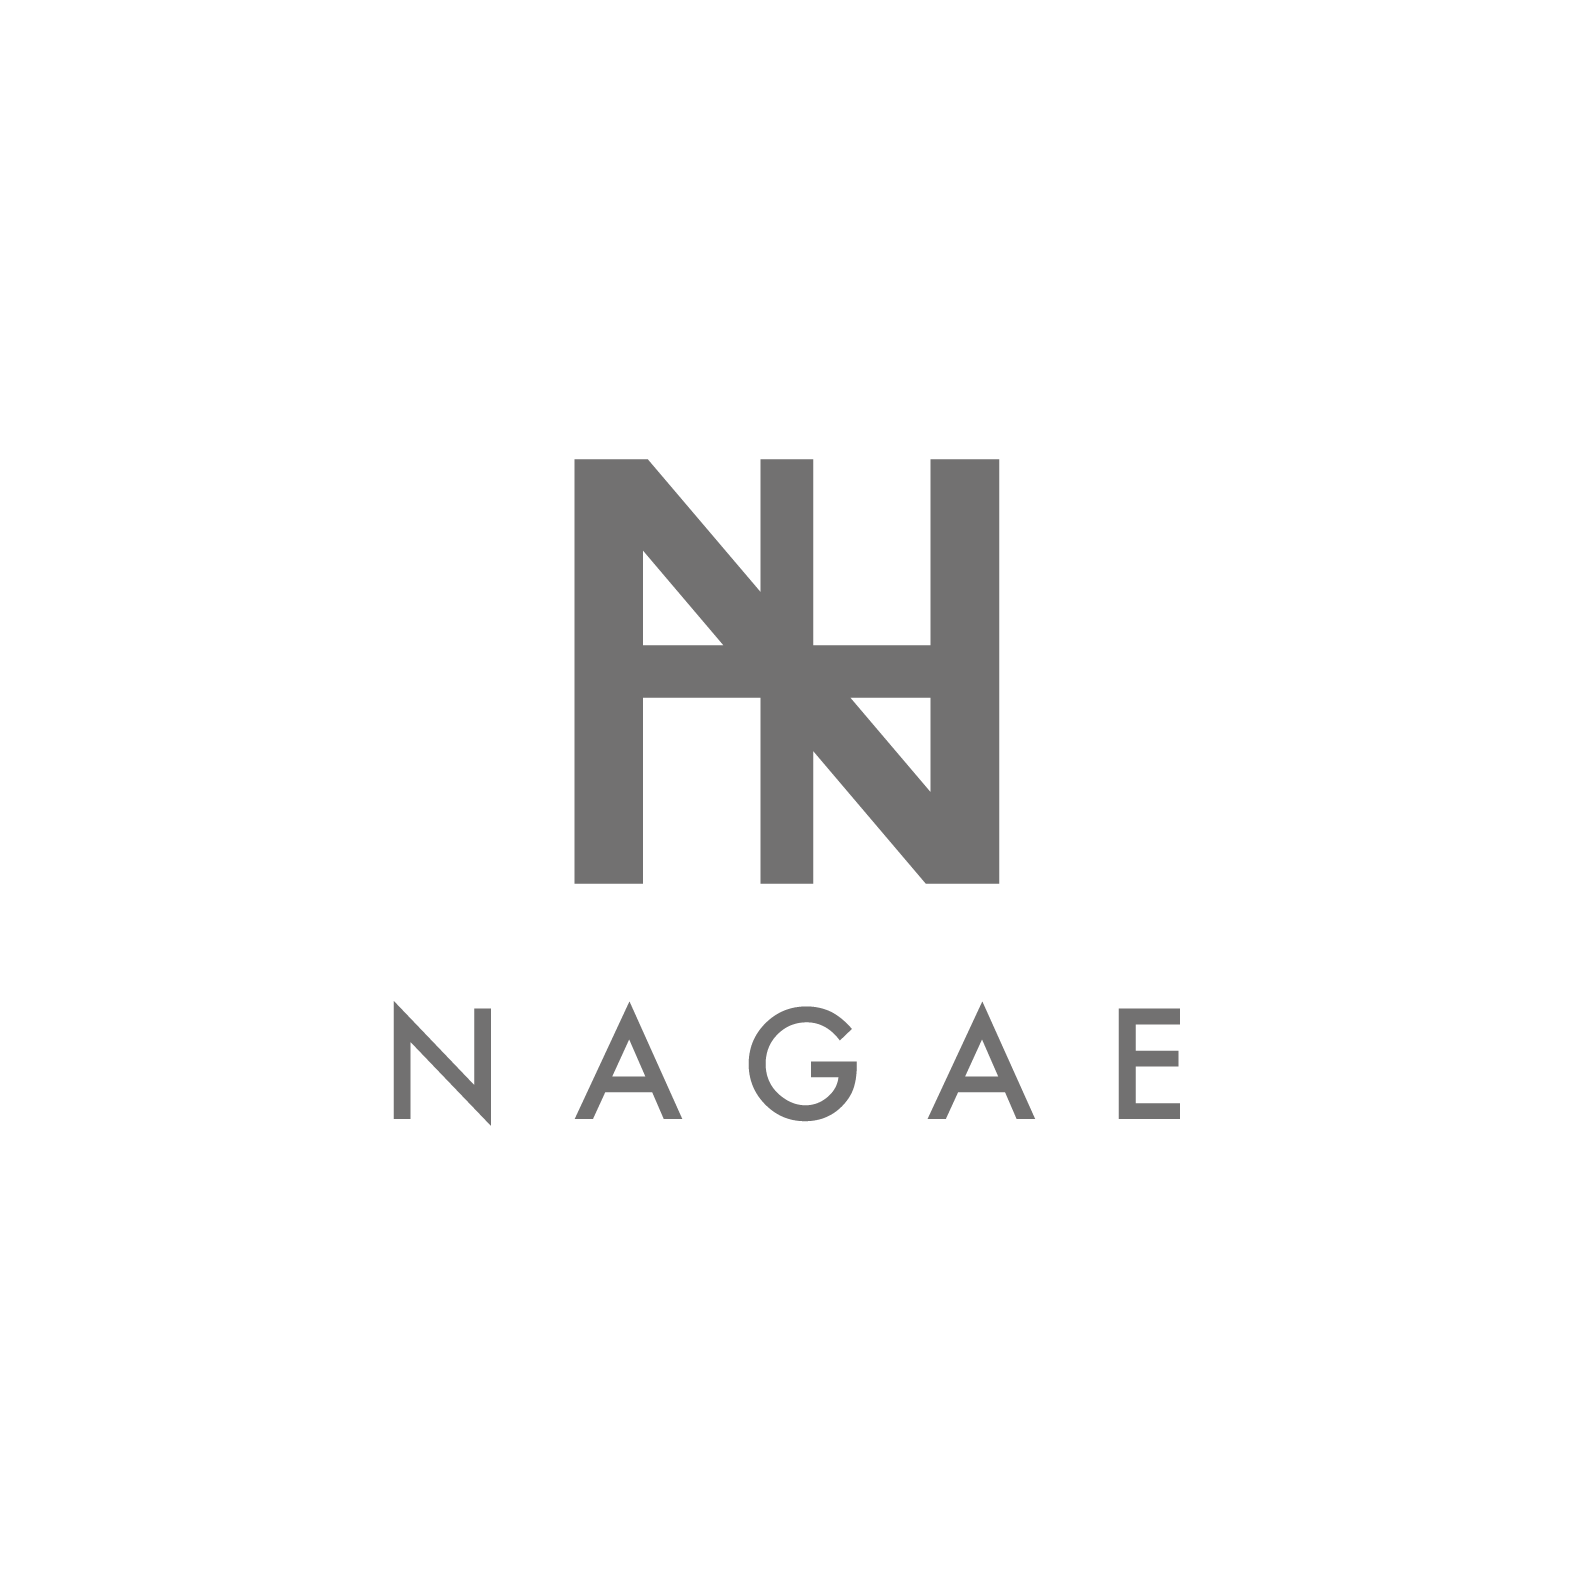 NAGAE+公式オンラインショップ